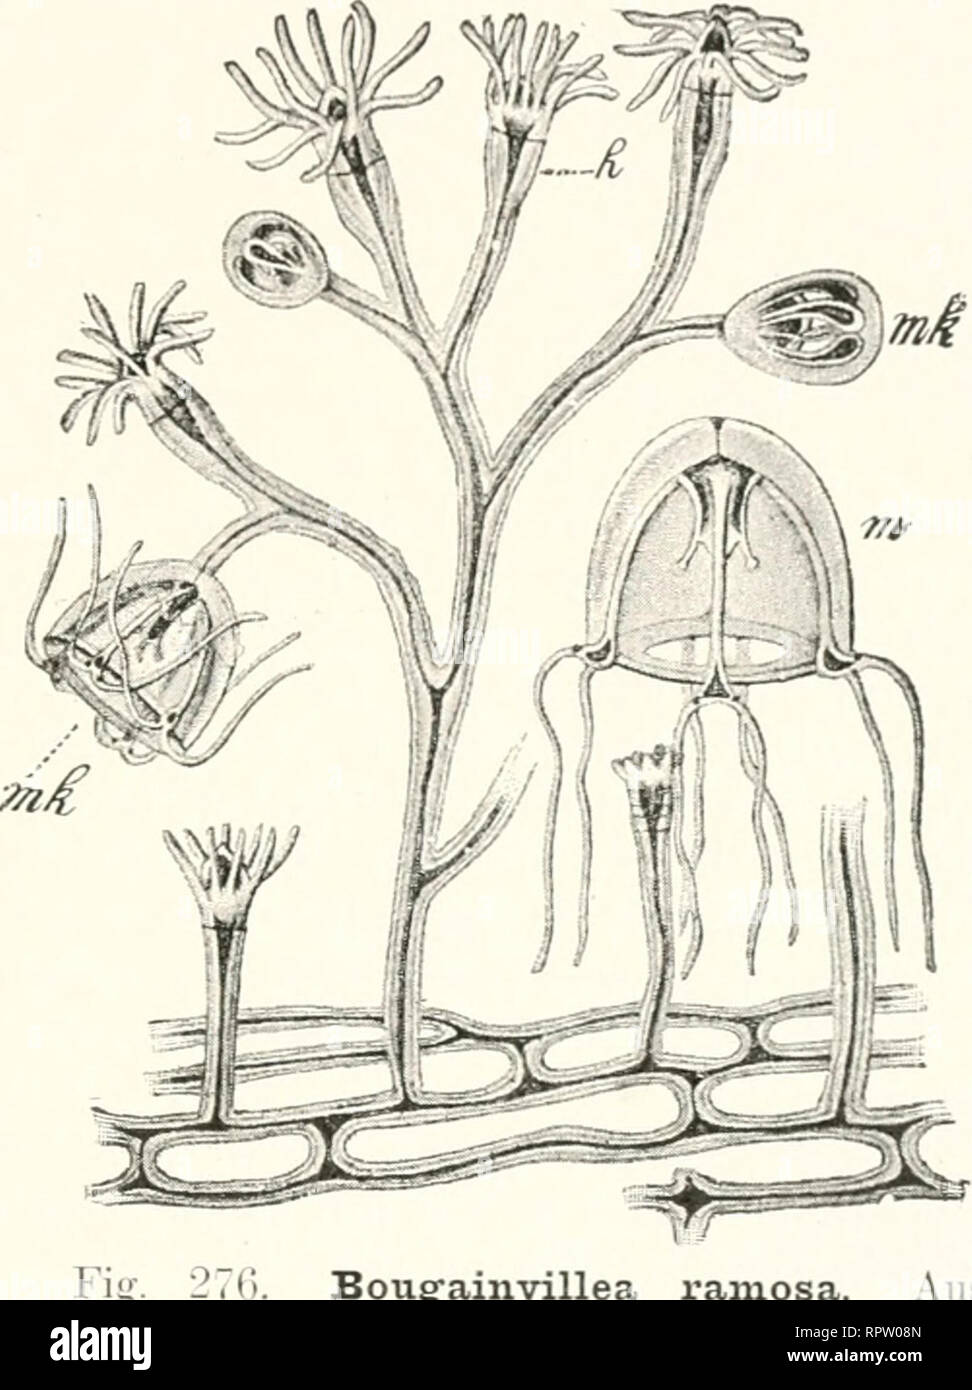 . Allgemeine Biologie. Cytology; Histology. Die Zelle als Anlage eines Organismus. 357 Zellen Knospen bilden, die zu einem Sprol.l aus wachsen, der. vom Ganzen abgetrennt und in Erde verpflanzt, sich bewurzelt und zu einem vollstän- digen Baum wird. Bei Cölenteraten, manchen Würmern und Tunicaten ist die ungeschlechtliche Vermehrung auf vegetativem Wege eine ähnliche, da fast an jeder Stelle des Körpers eine Knospe entstehen und zu einem neuen Individuum werden kann. Bei Bougainvillea ramosa zum Beispiel (Fig. 276) entwickeln sich neue Individuen nicht nur als Seitenzweige des Hydroidenstöckch Stock Photo